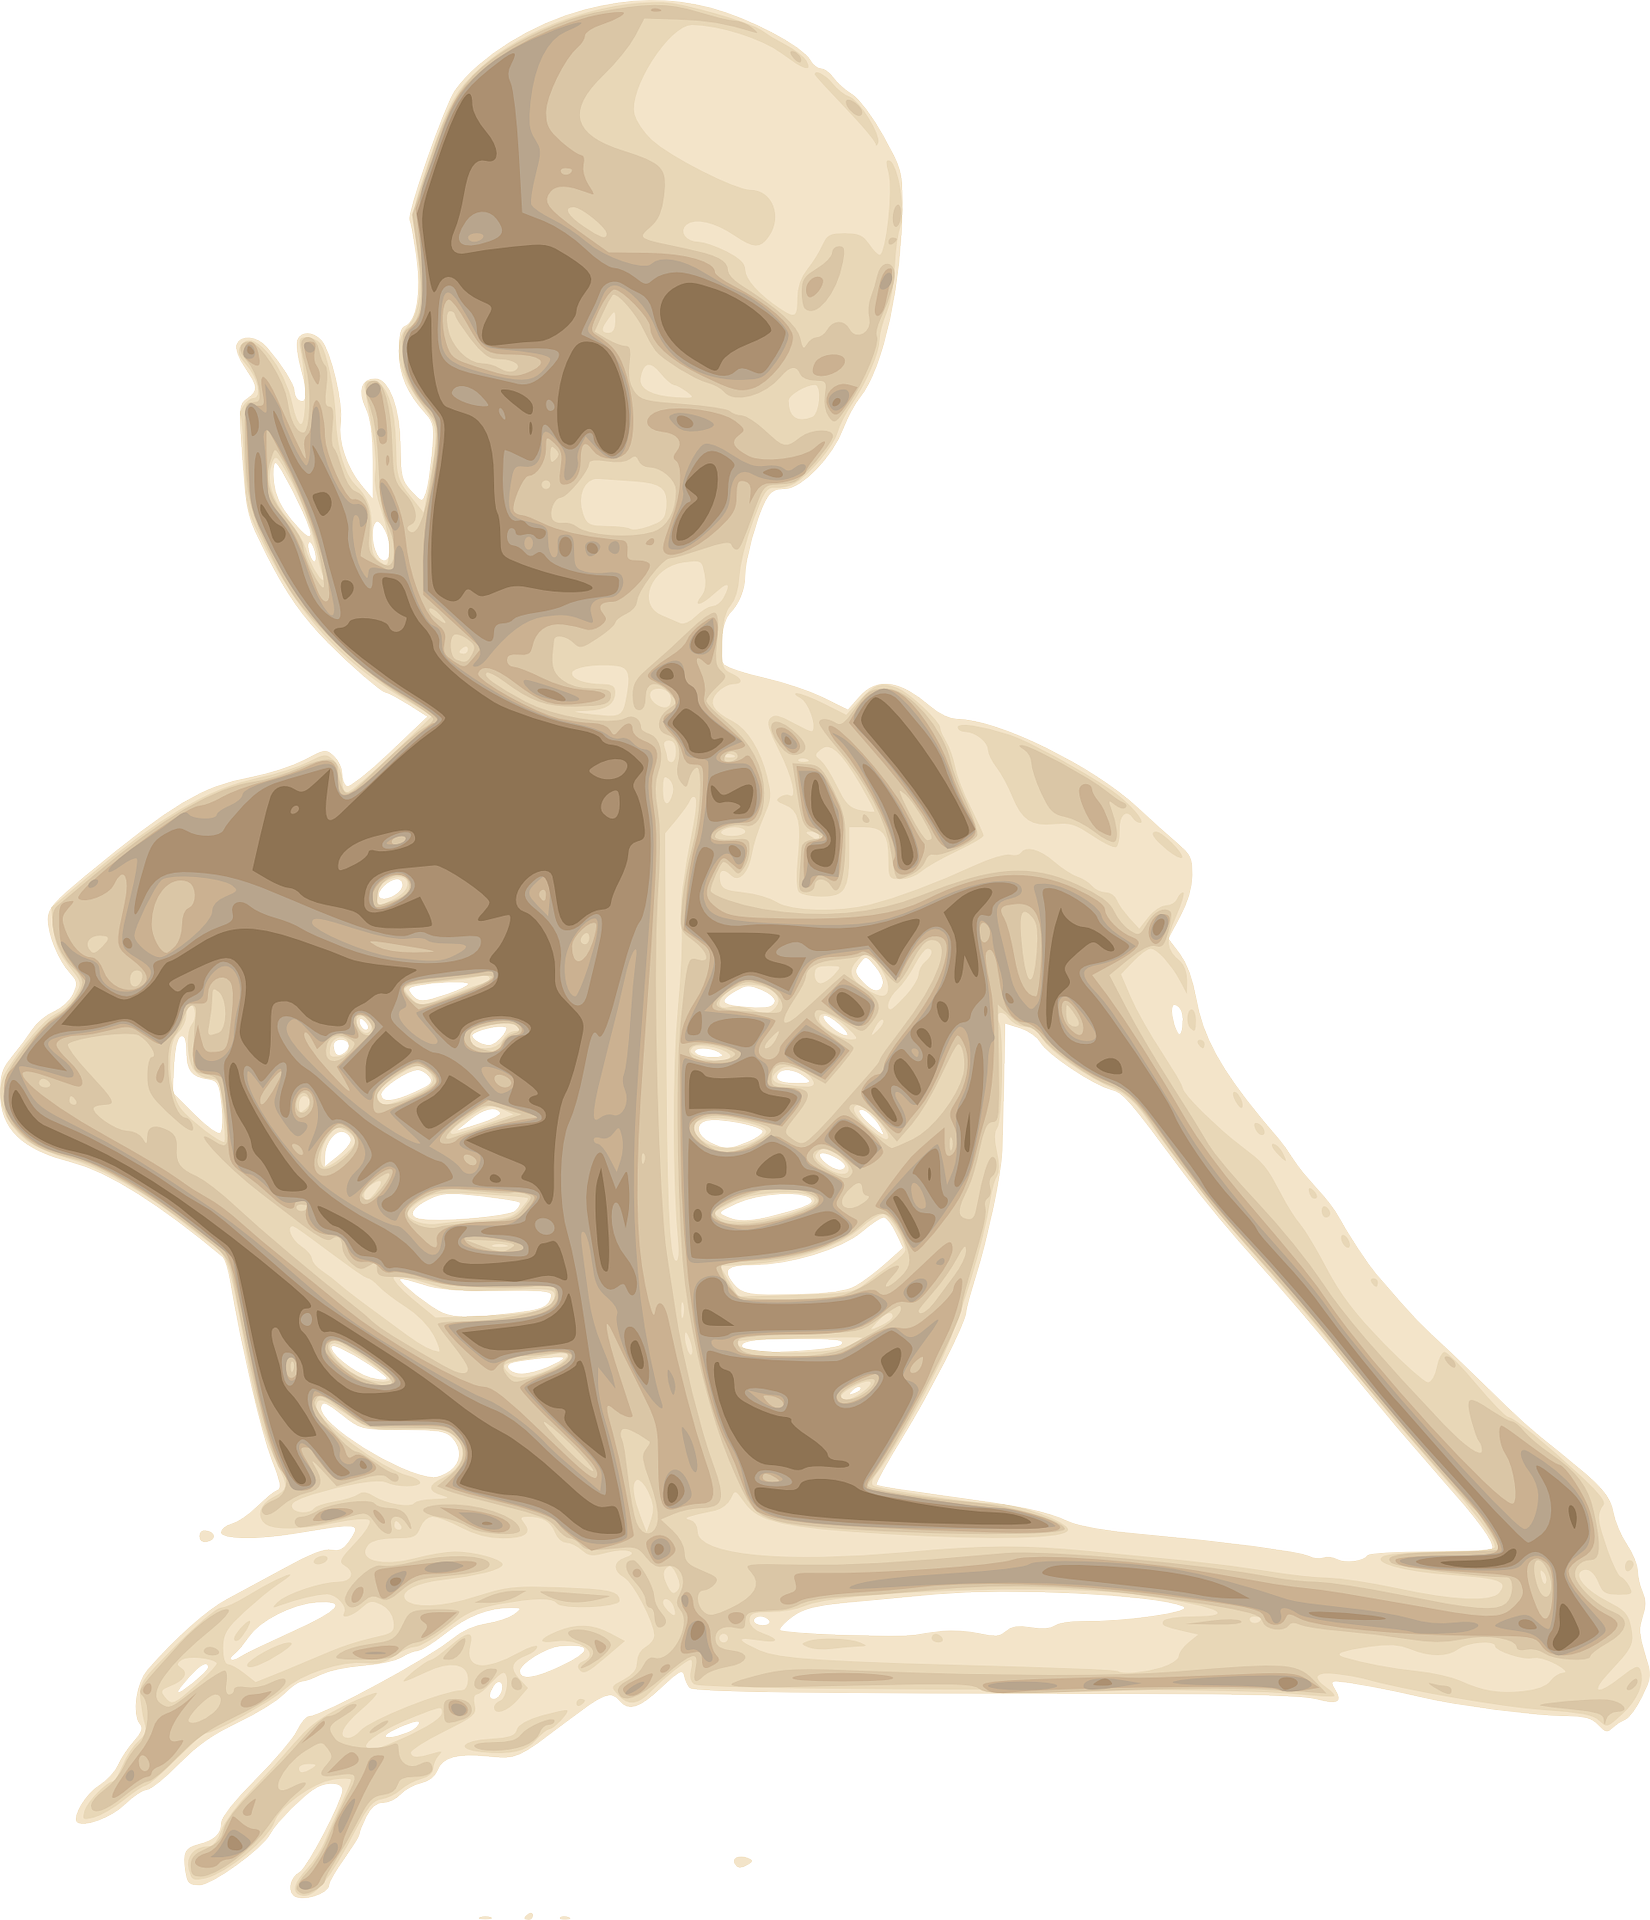 Smiling sitting skeleton, drawing free image download